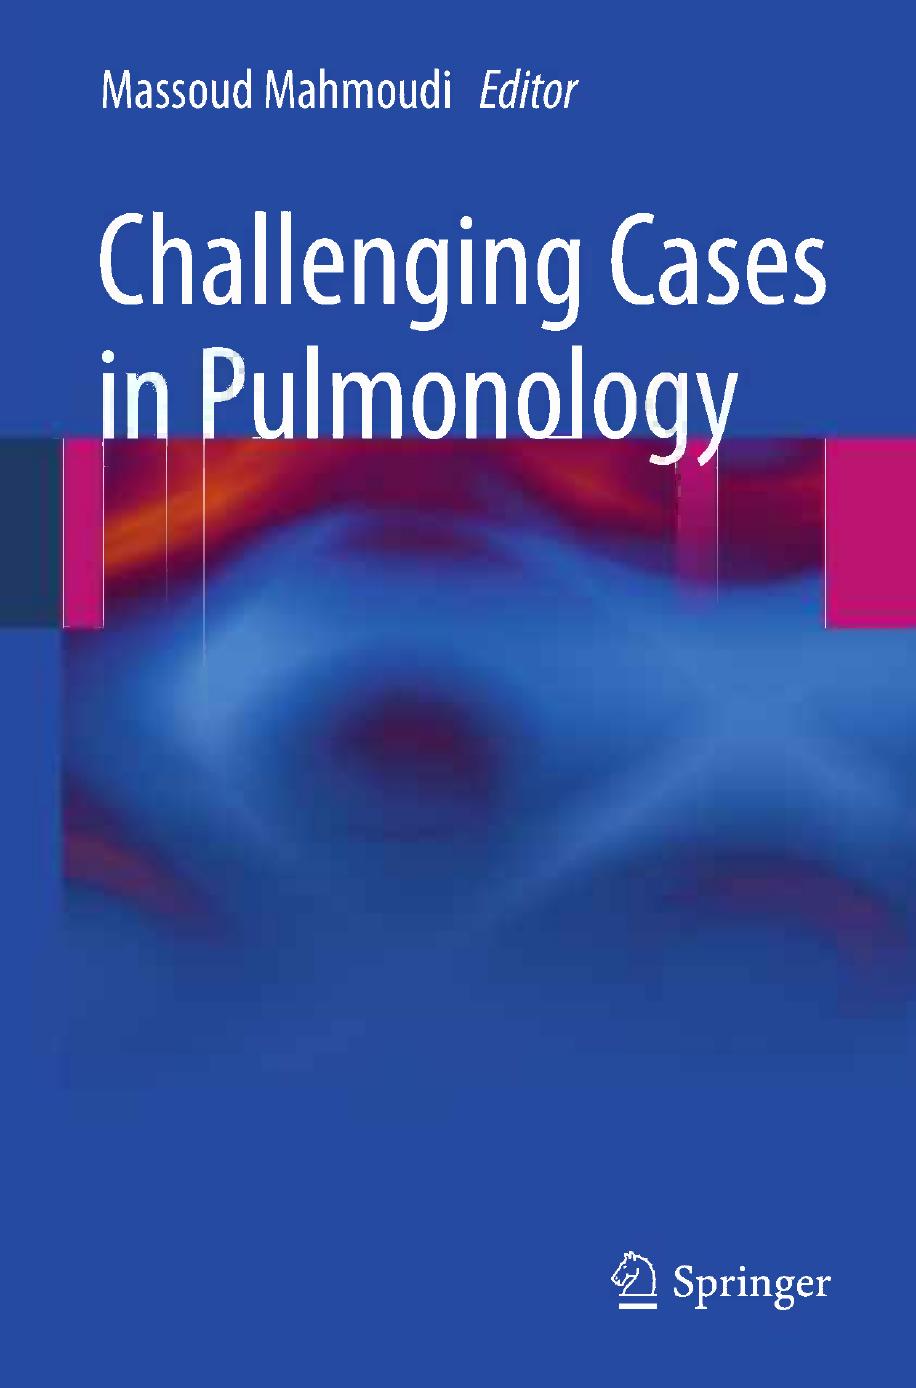 Challenging Cases in Pulmonology 2012, Springer-Verlag New York)